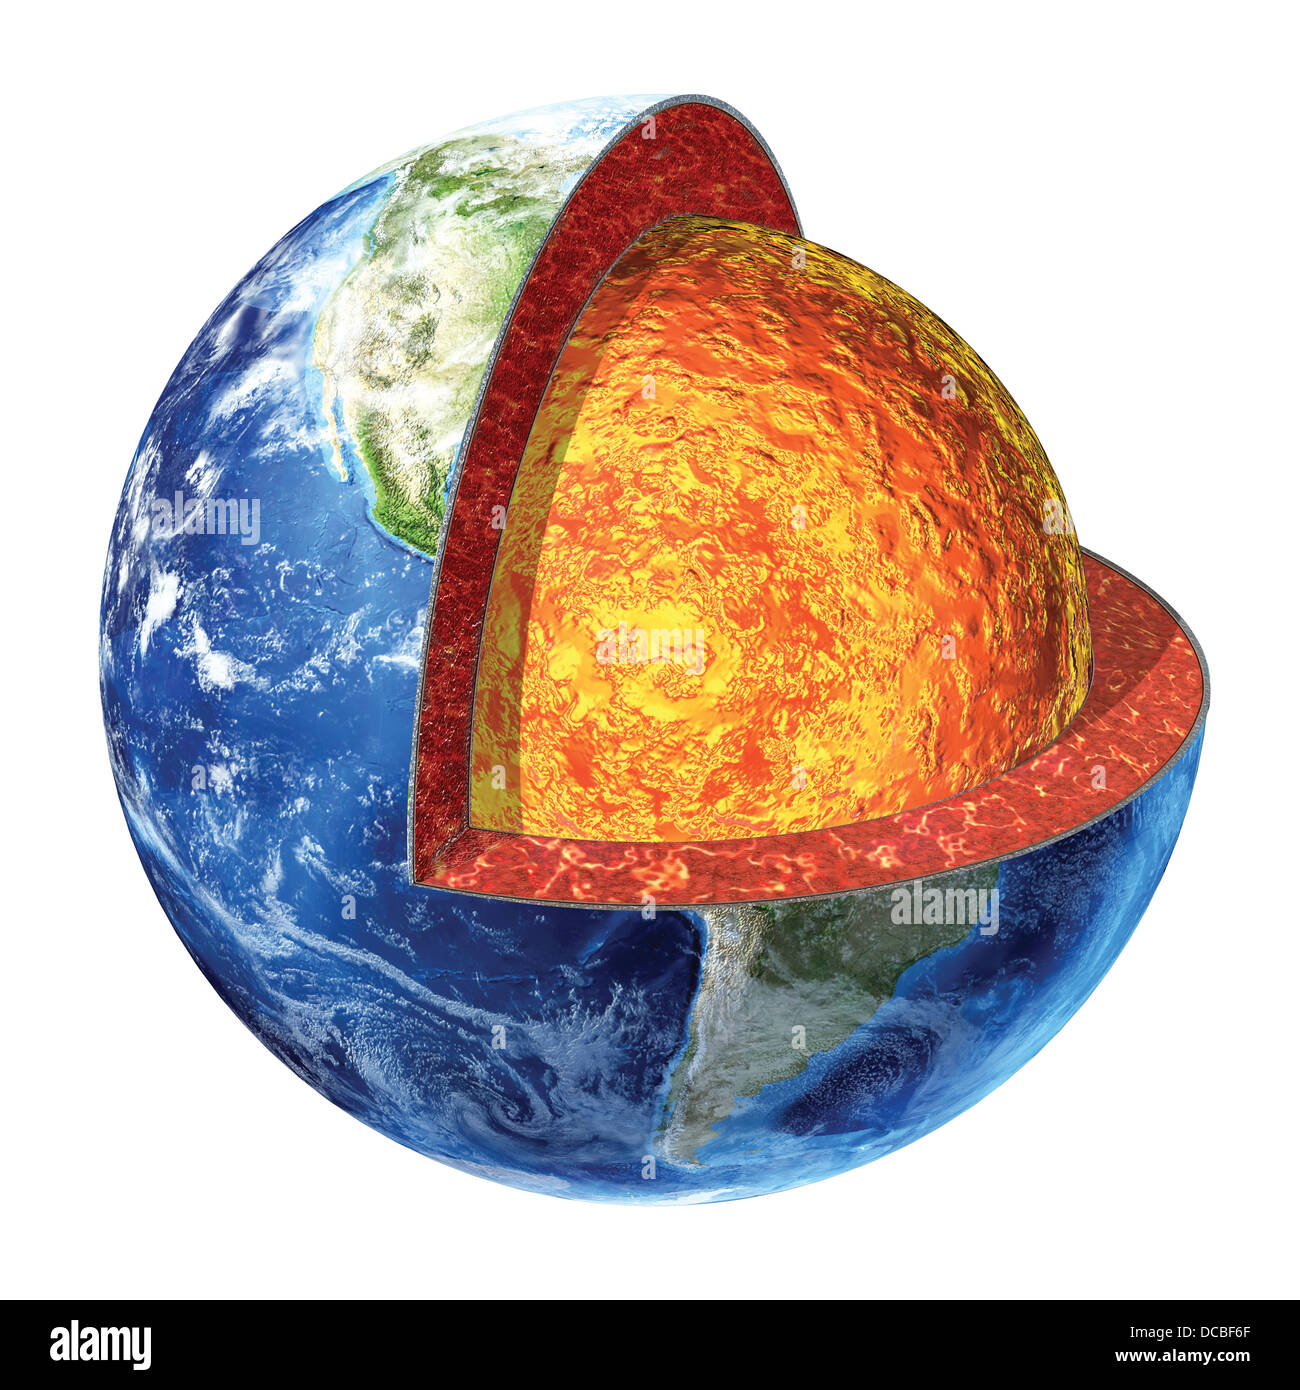 Querschnitt der Erde. Zeigt den unteren Mantel von Olivin, Piroxene und Feldspat gemacht. 1800-2800° c Temperatur. Stockfoto